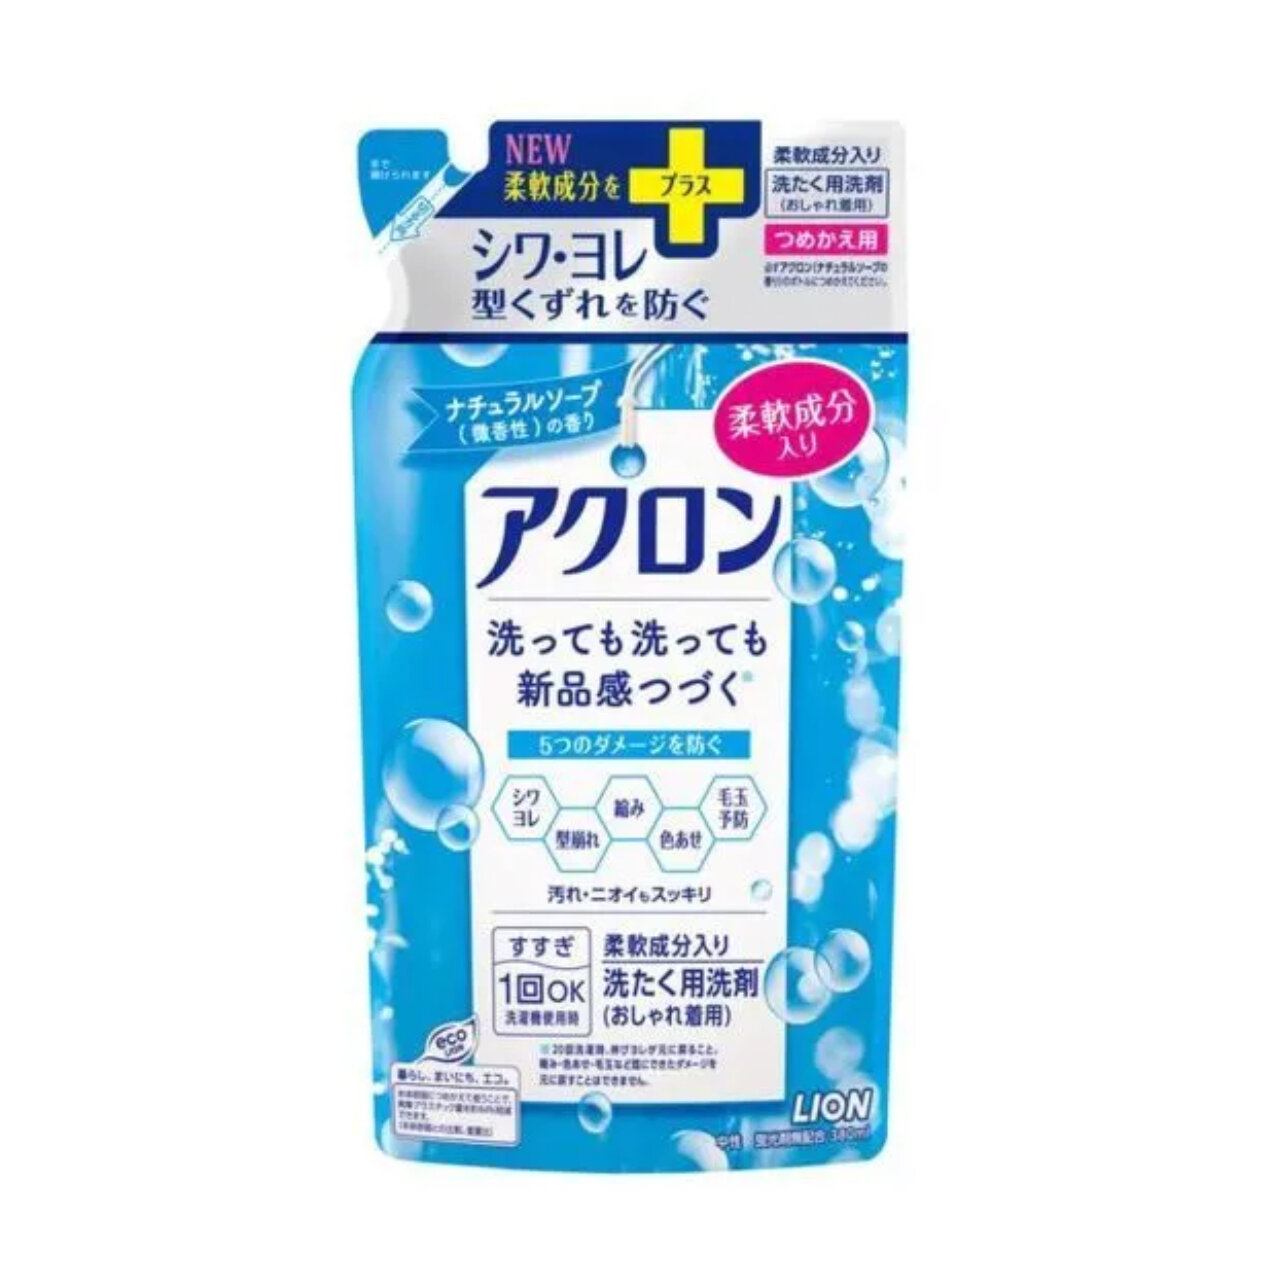 Жидкость для стирки Lion Япония Akron для деликатных тканей аромат мыла, сменный блок, 400 мл